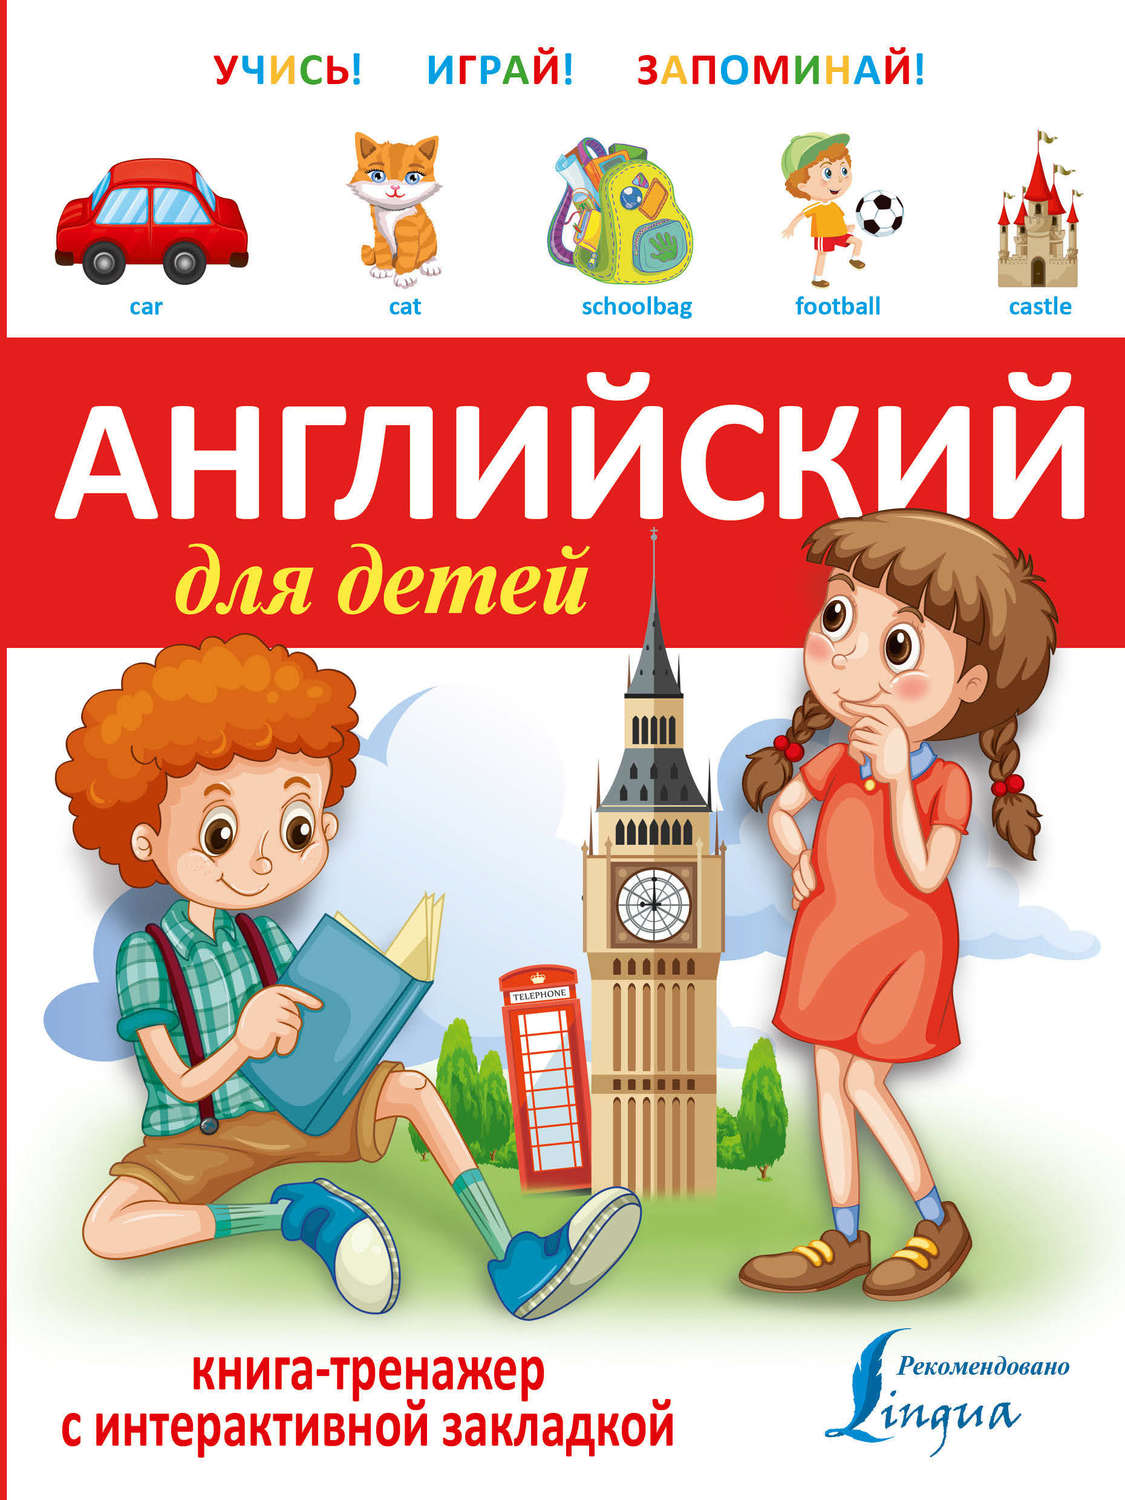 Книги для обучения английскому. Английский для детей. Английский для детей книга. Англискийдлдитейкнига. Книги тренажеры для детей.